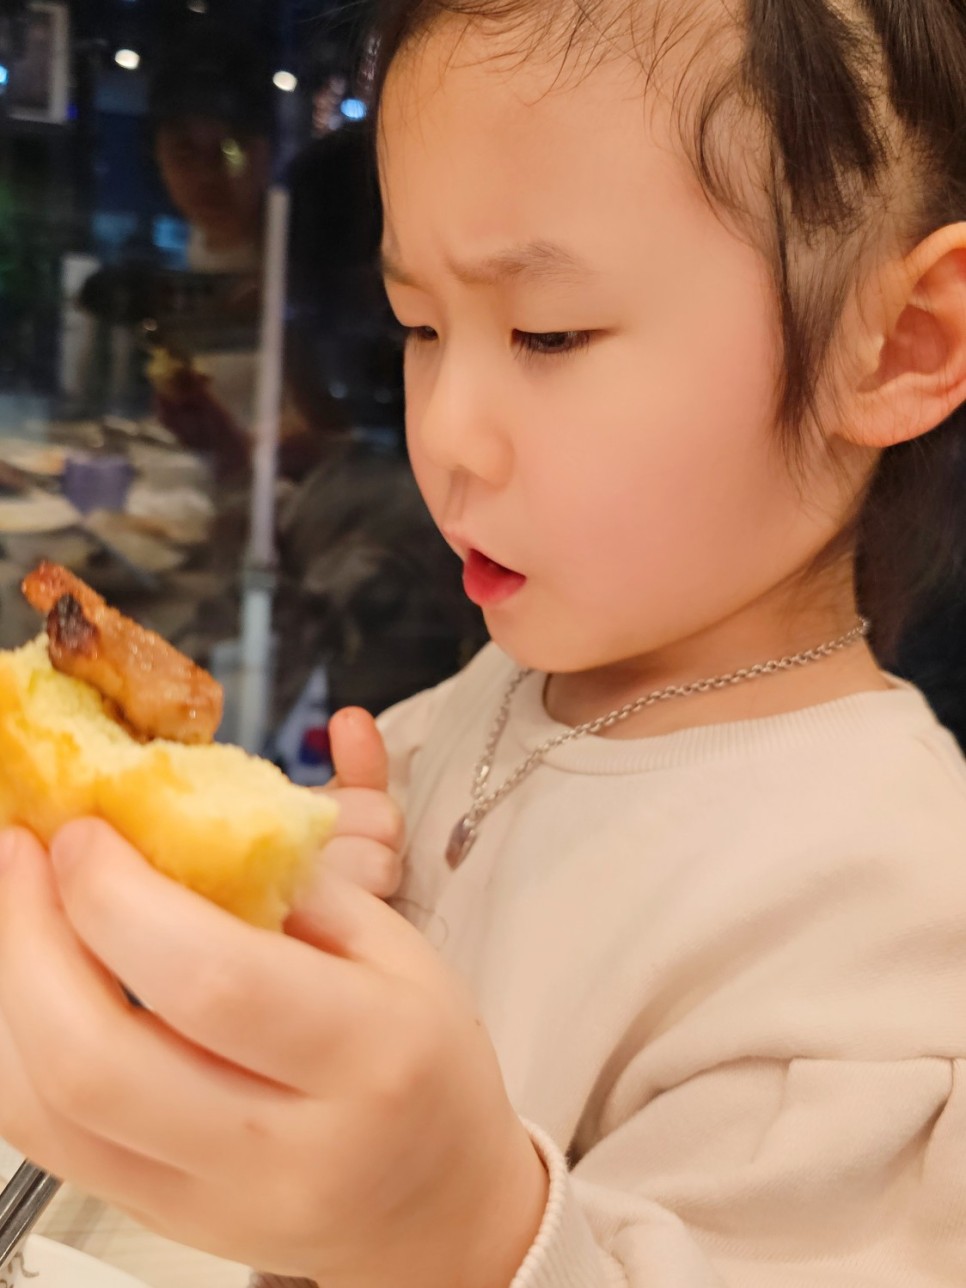 인천 돼지갈비 맛집, 명륜진사갈비 간석오거리점 아이들과 다녀왔어요!